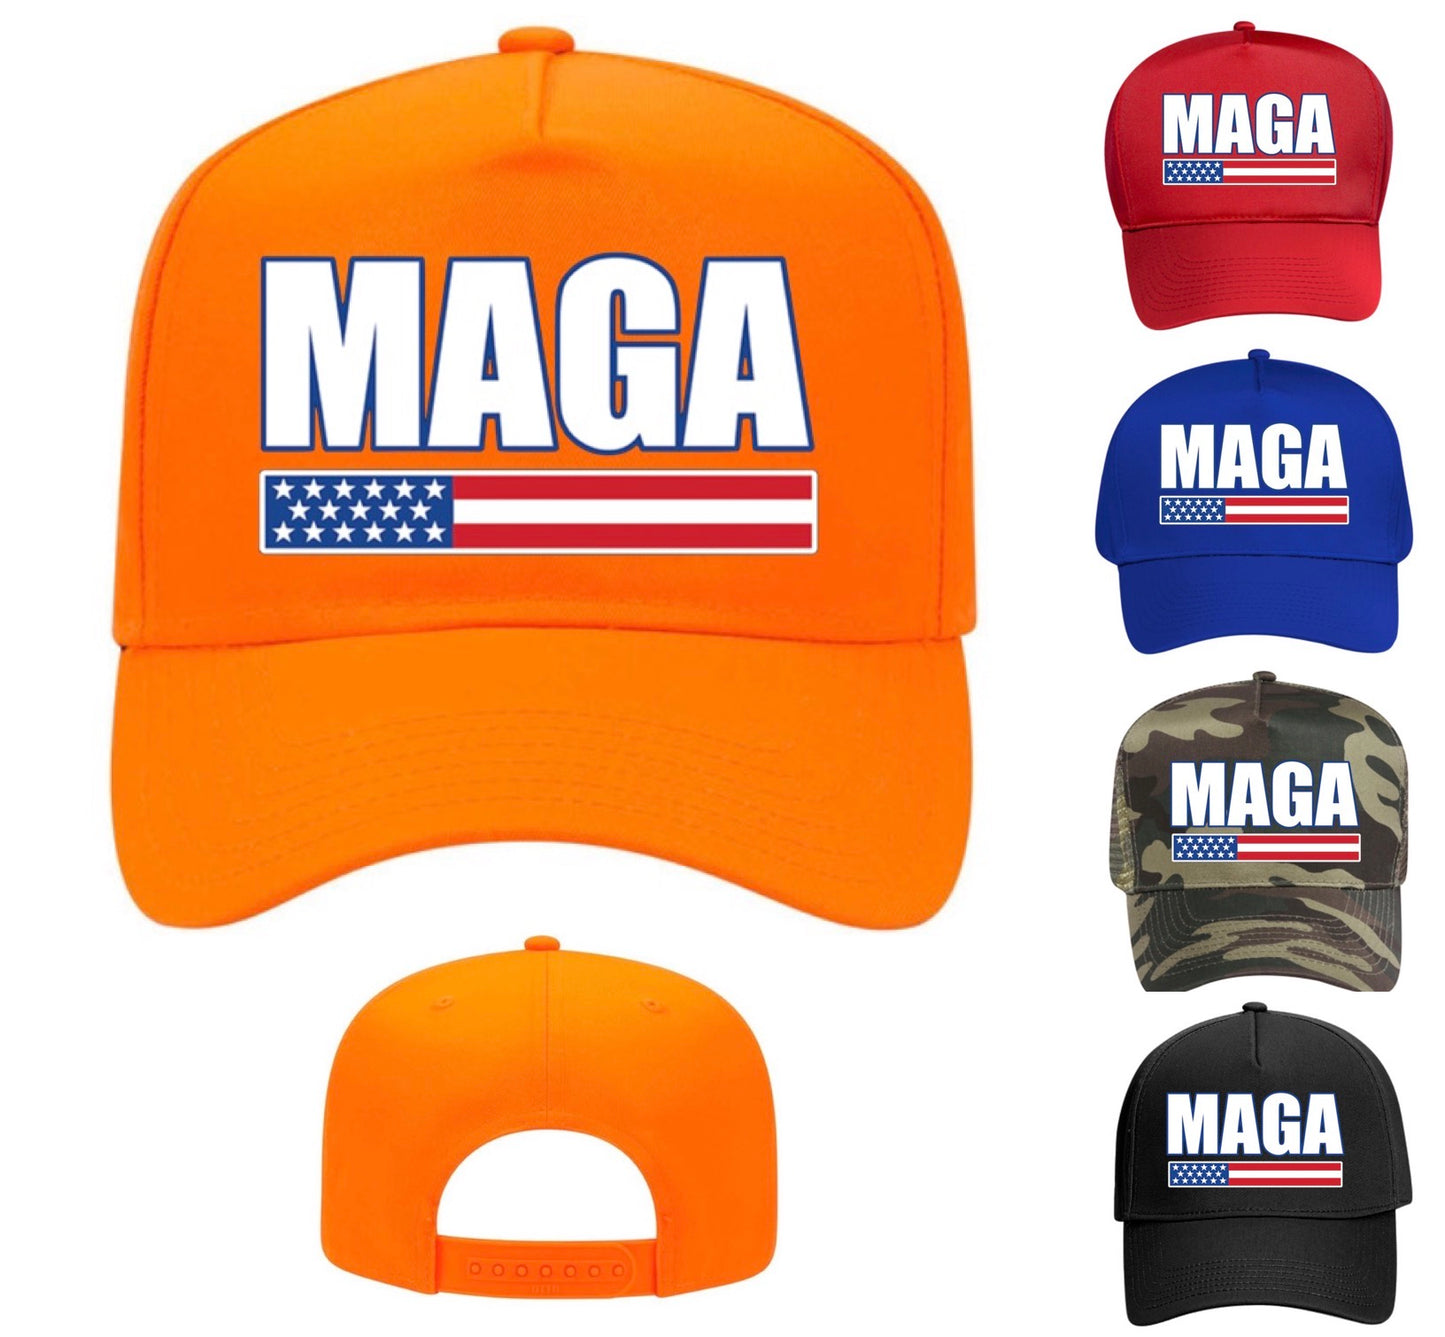 Buy 1 Get 1 Free — MAGA Hat